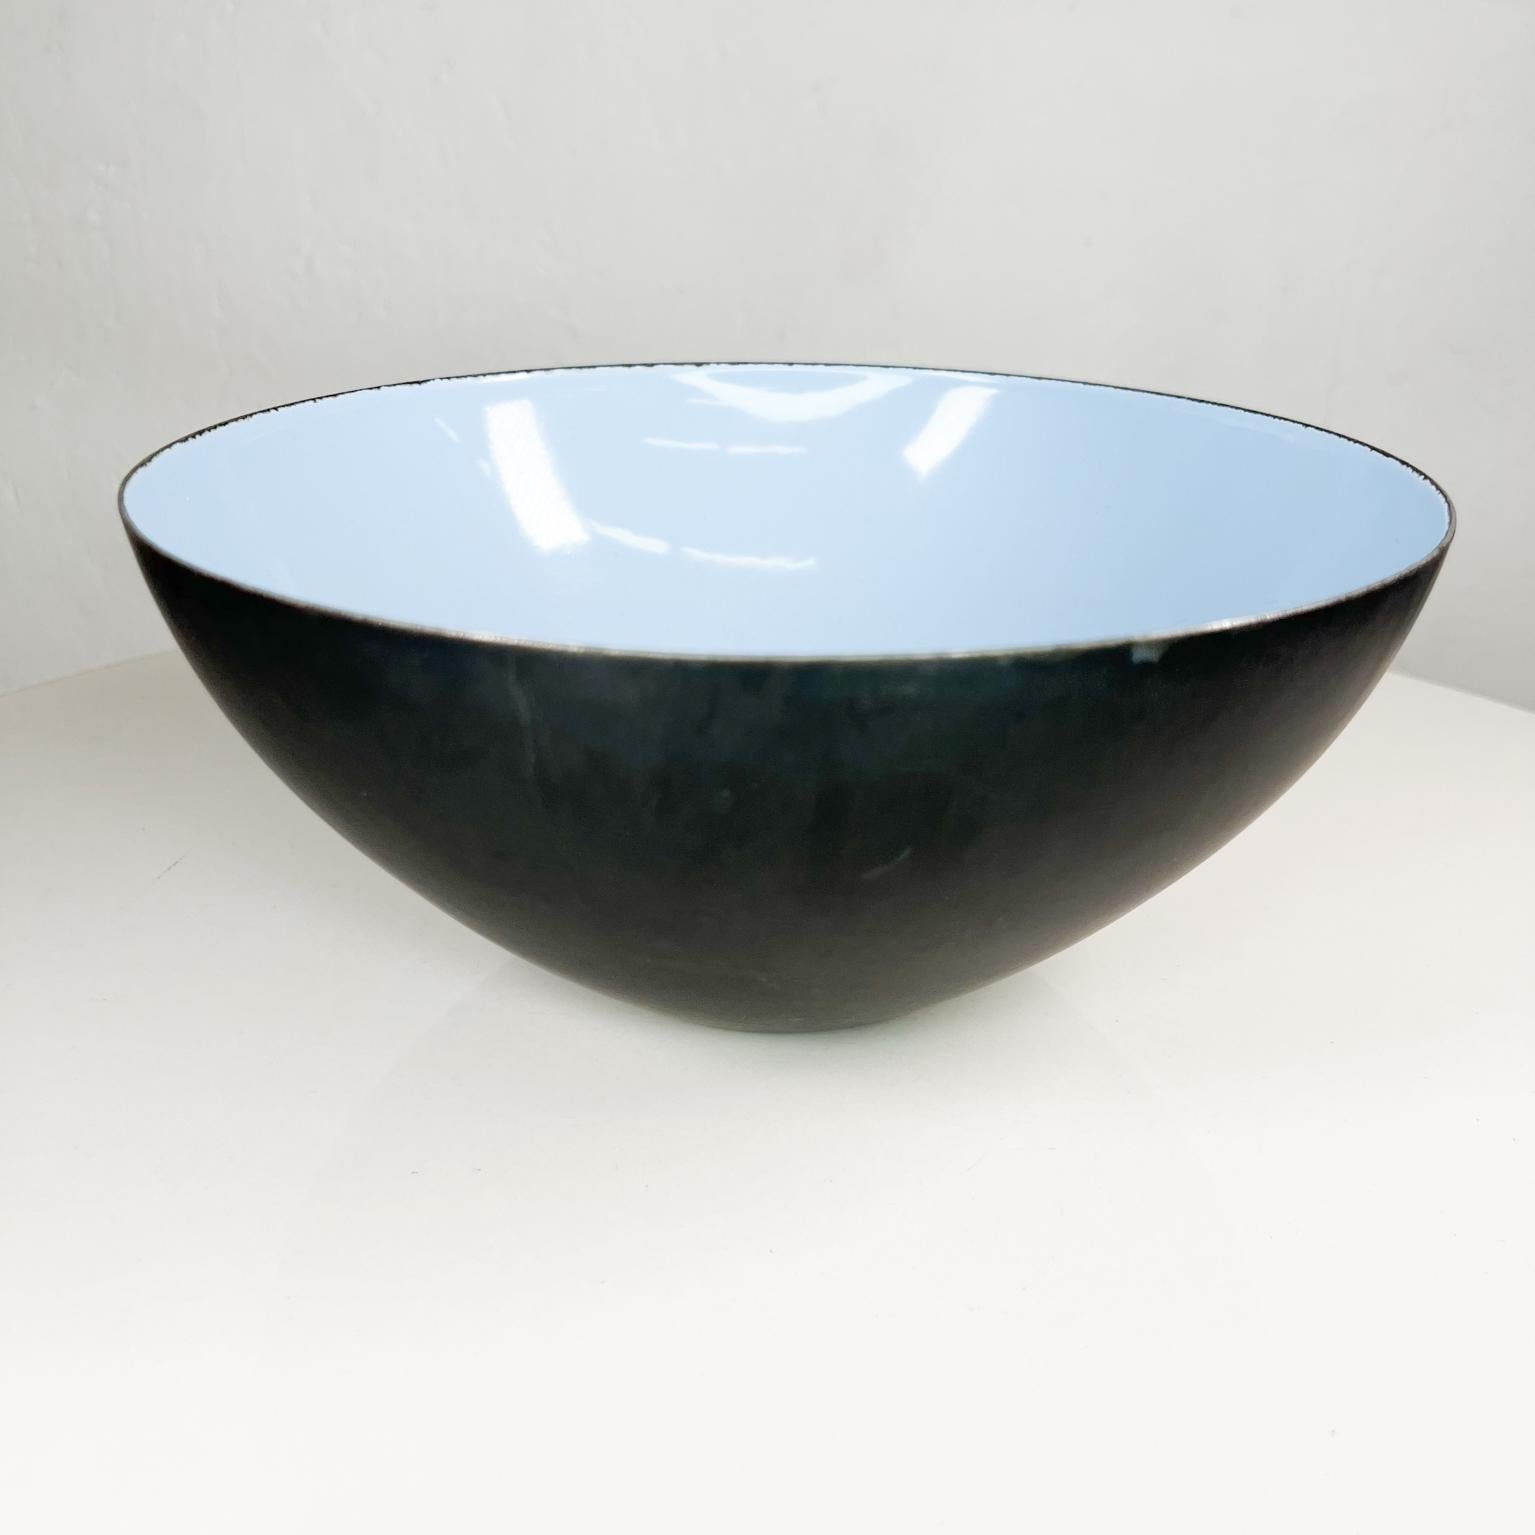 Fabulous modern design: Herbet Krenchel, Krenit Bowl 1953 MoMA
Blue on Black enameled steel
Krenit bowl from the 1950s
Designed by Herbert Krenchel
Produced by Torben Ørskov
Measures: 9.75 diameter x 4.38 tall
Preowned original vintage